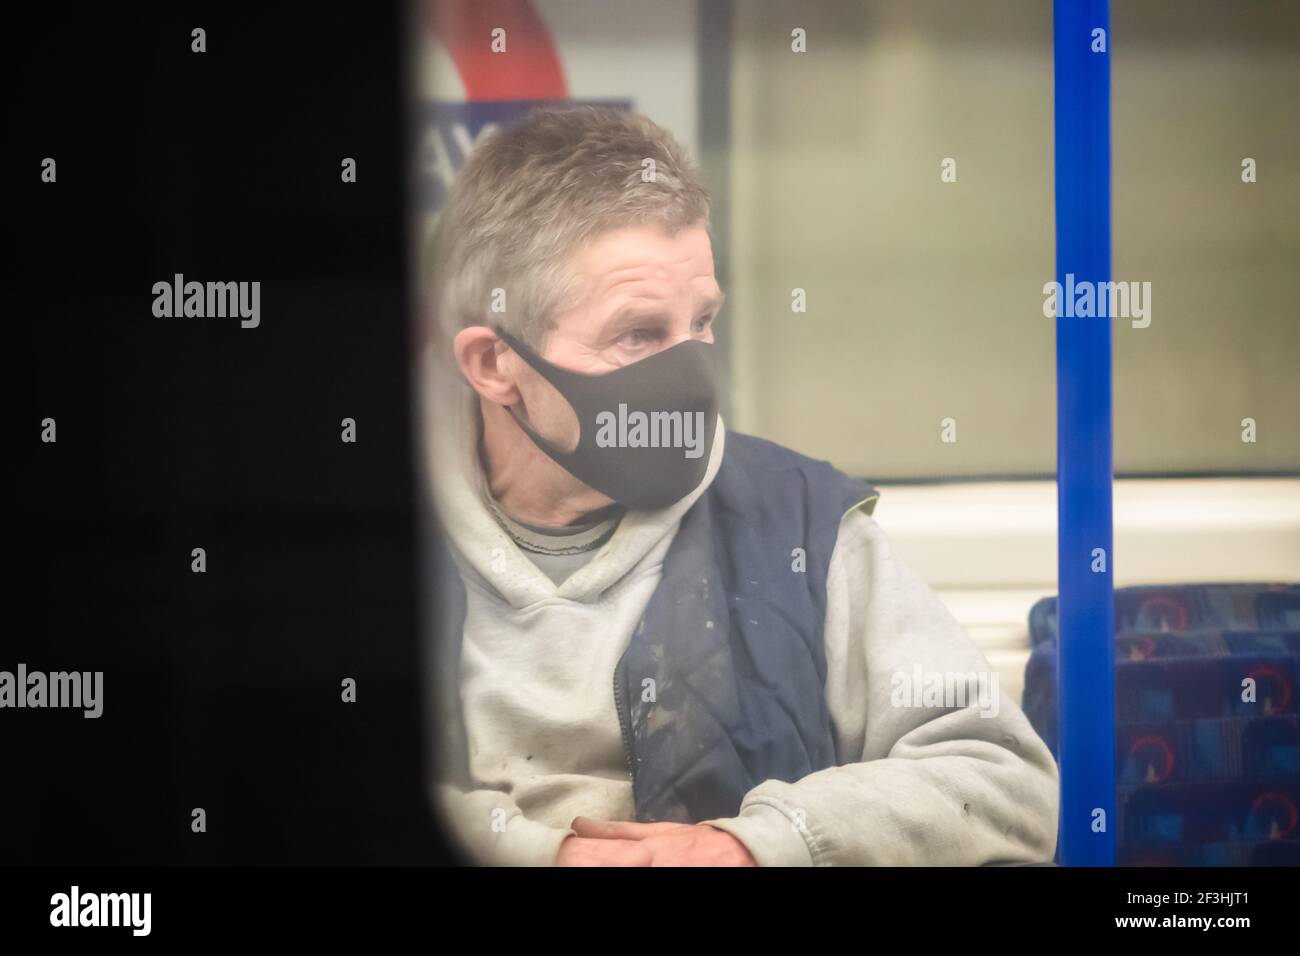 Londres, Royaume-Uni - 26 février 2021 - UN homme portant un masque facial lors d'un voyage dans le métro de Londres pendant la pandémie Covid-19 Banque D'Images